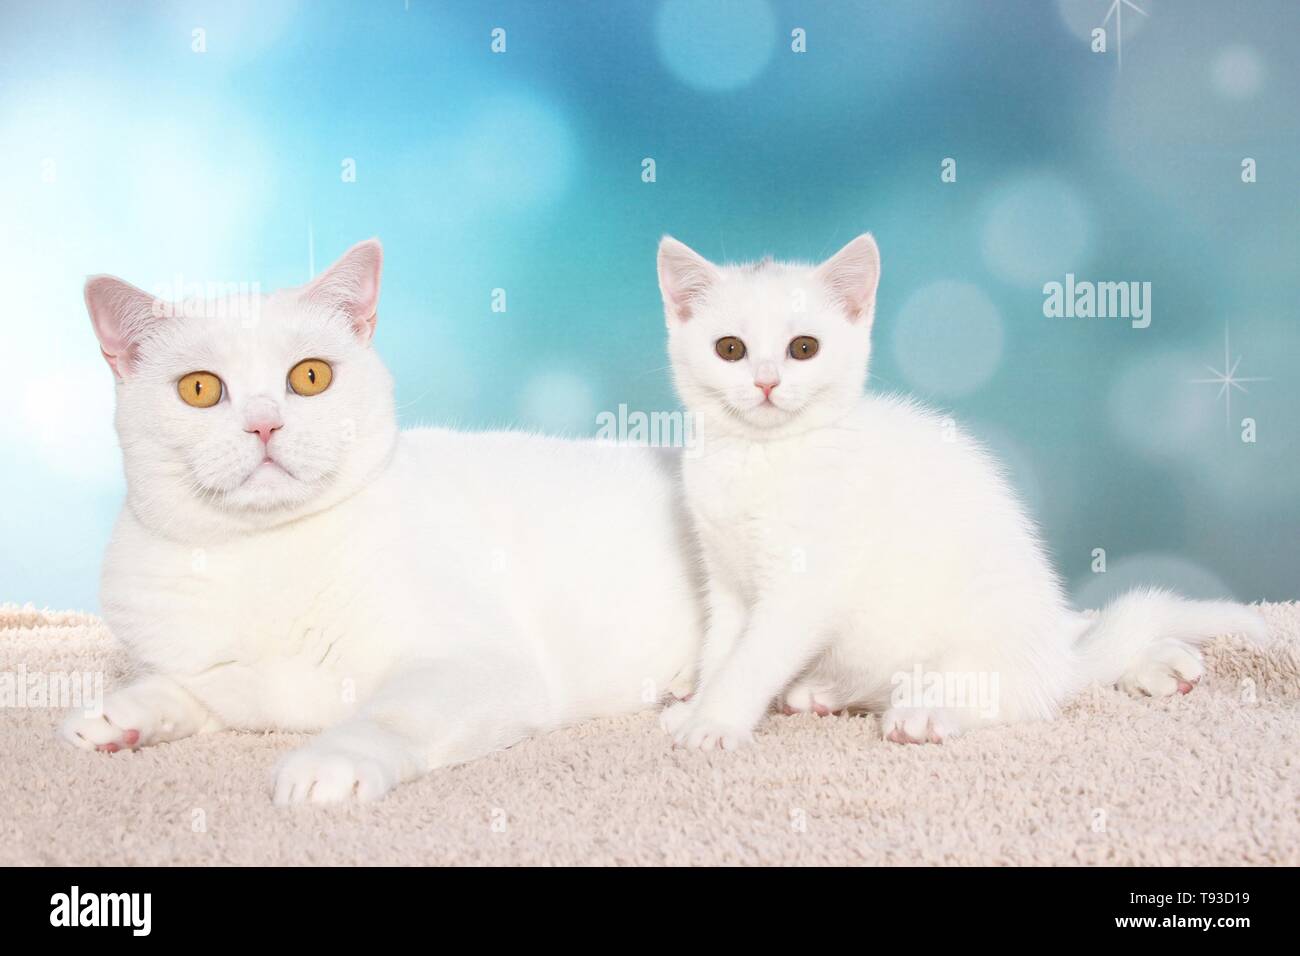 British Shorthair gato y gatito Foto de stock